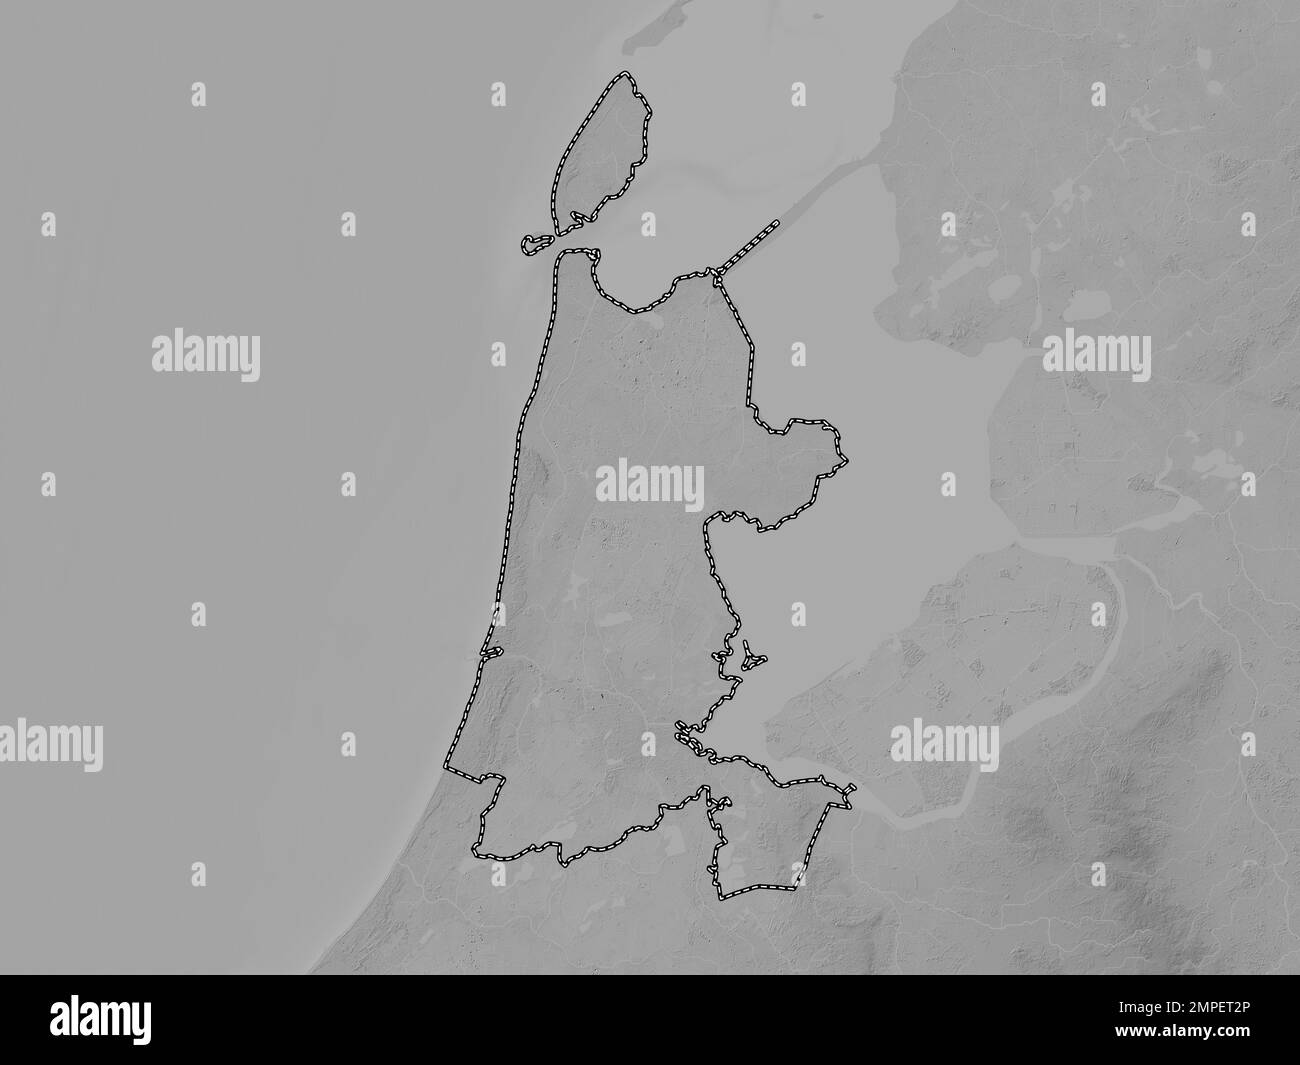 Noord-Holland, niederländische Provinz. Grauskala-Höhenkarte mit Seen und Flüssen Stockfoto